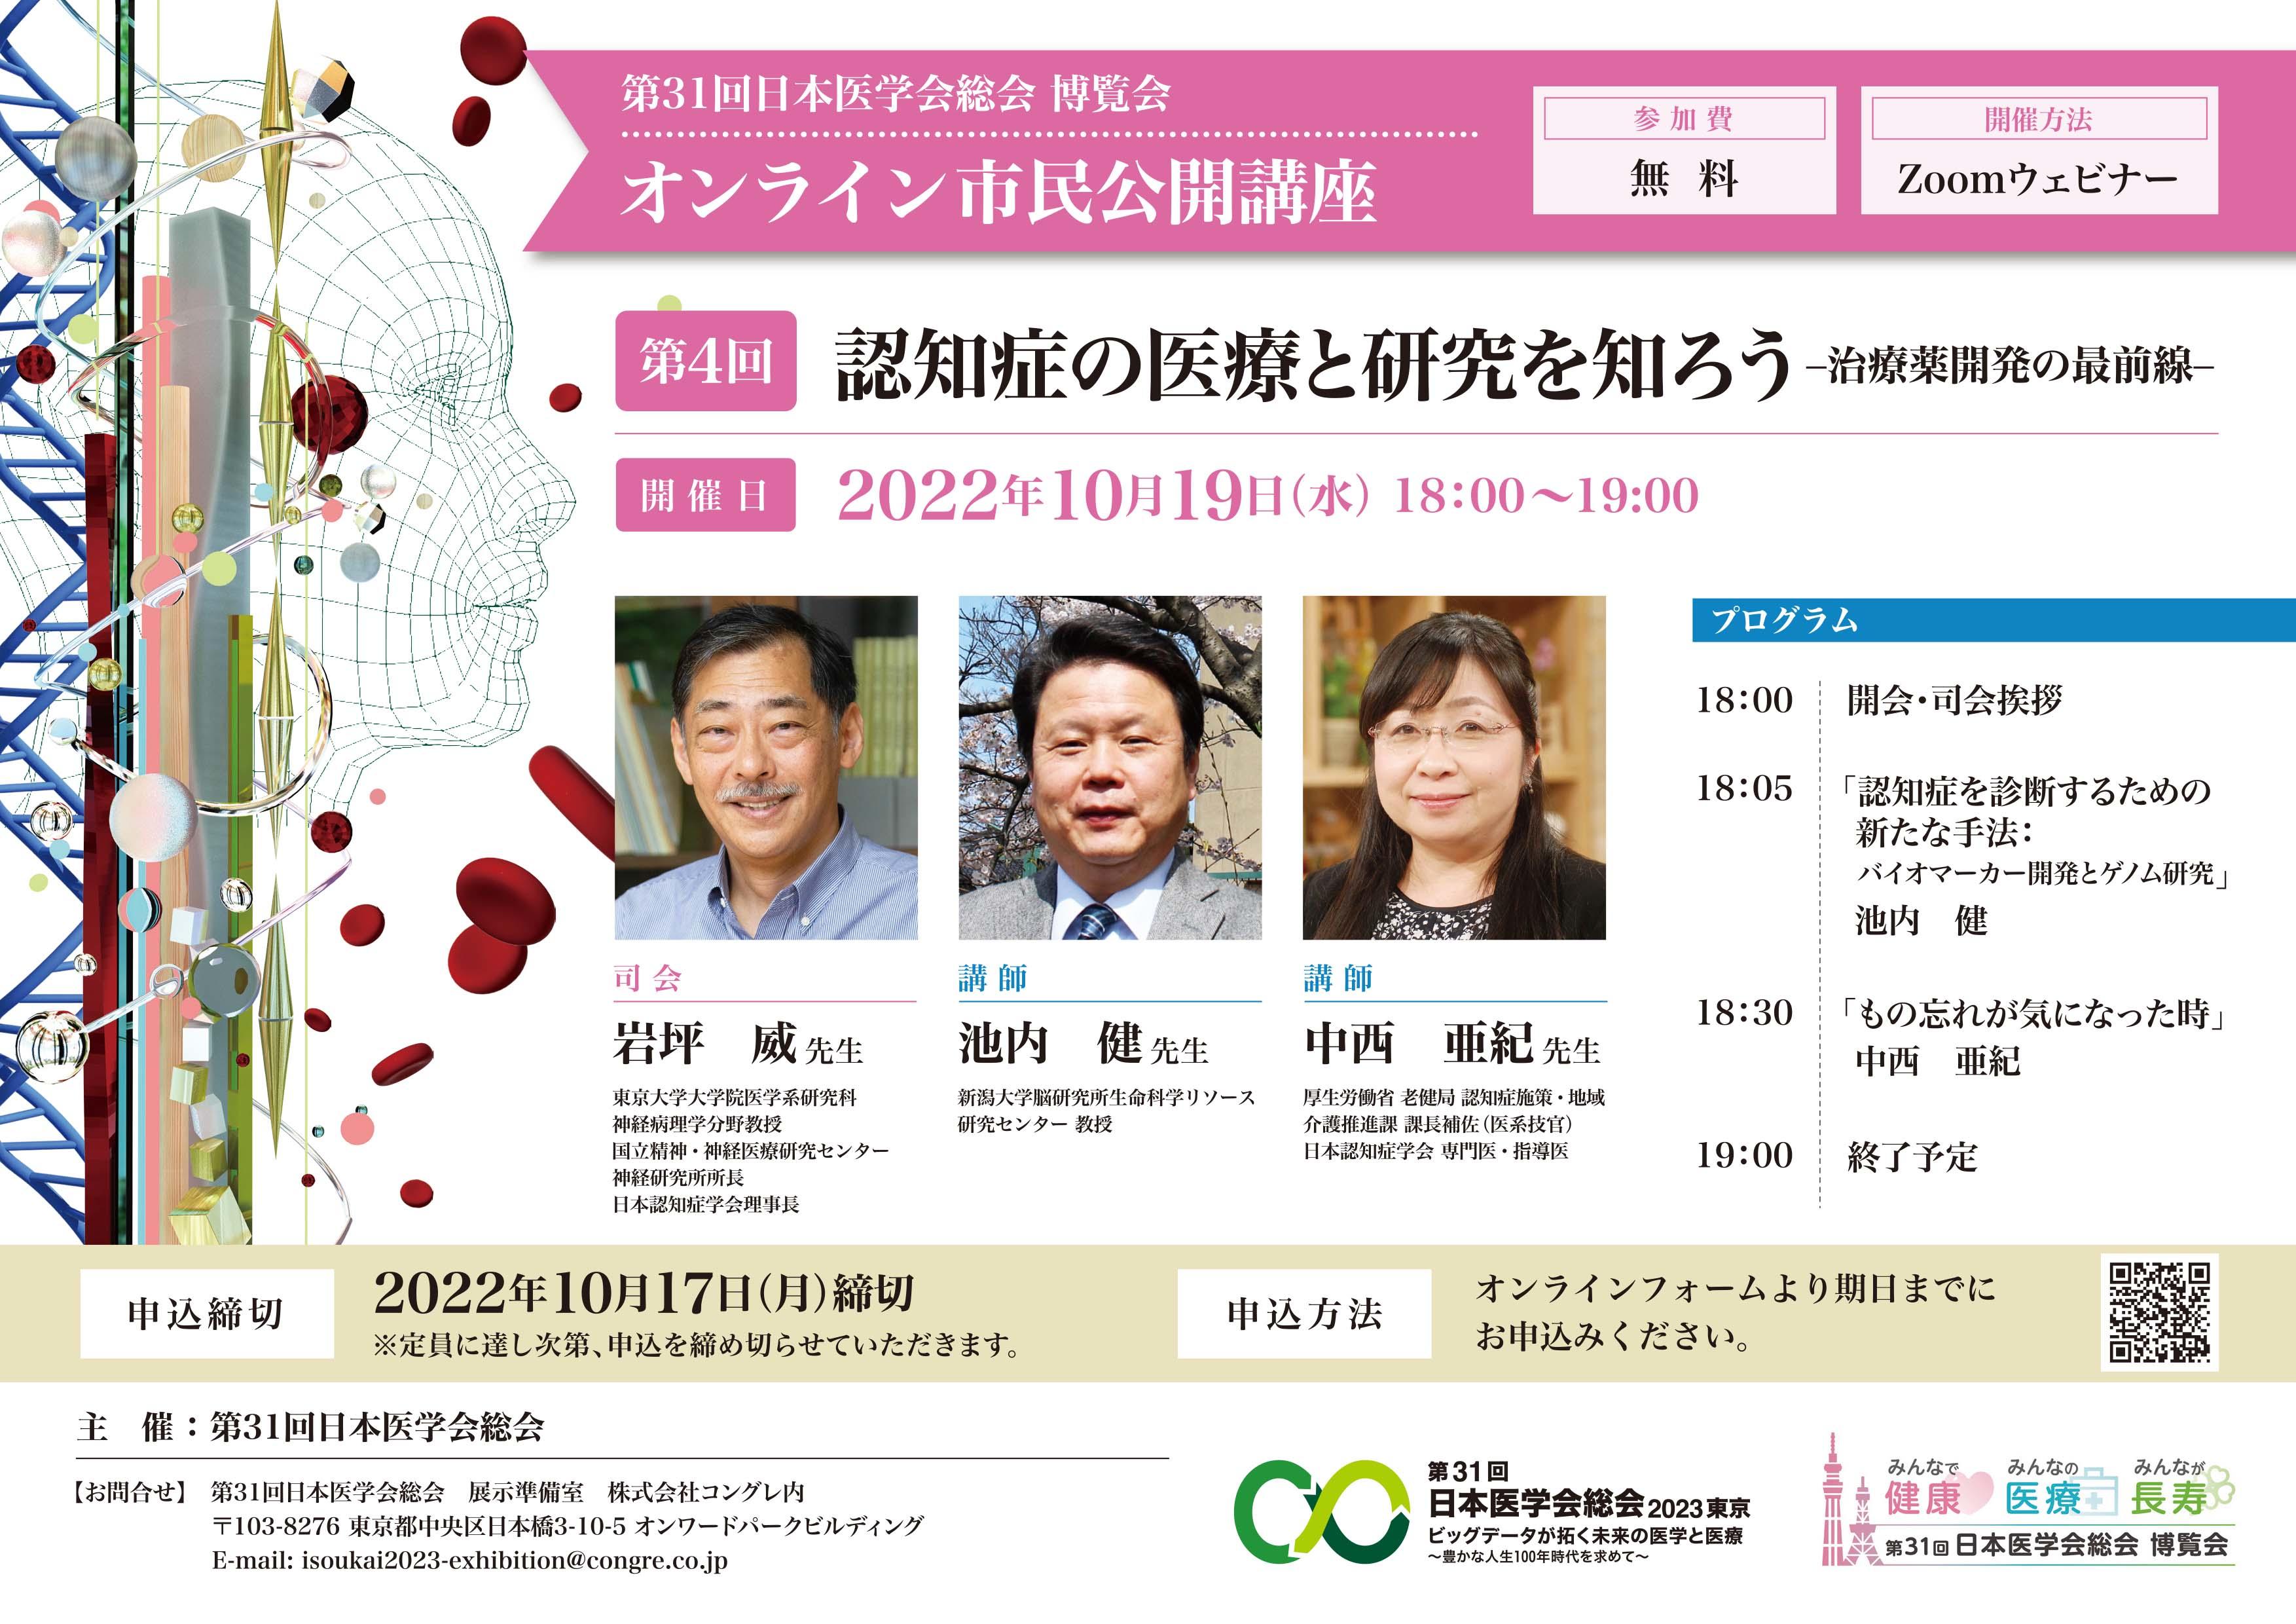 遺伝子機能解析学分野の池内健教授が第31回日本医学会総会のオンライン市民公開講座で講演します